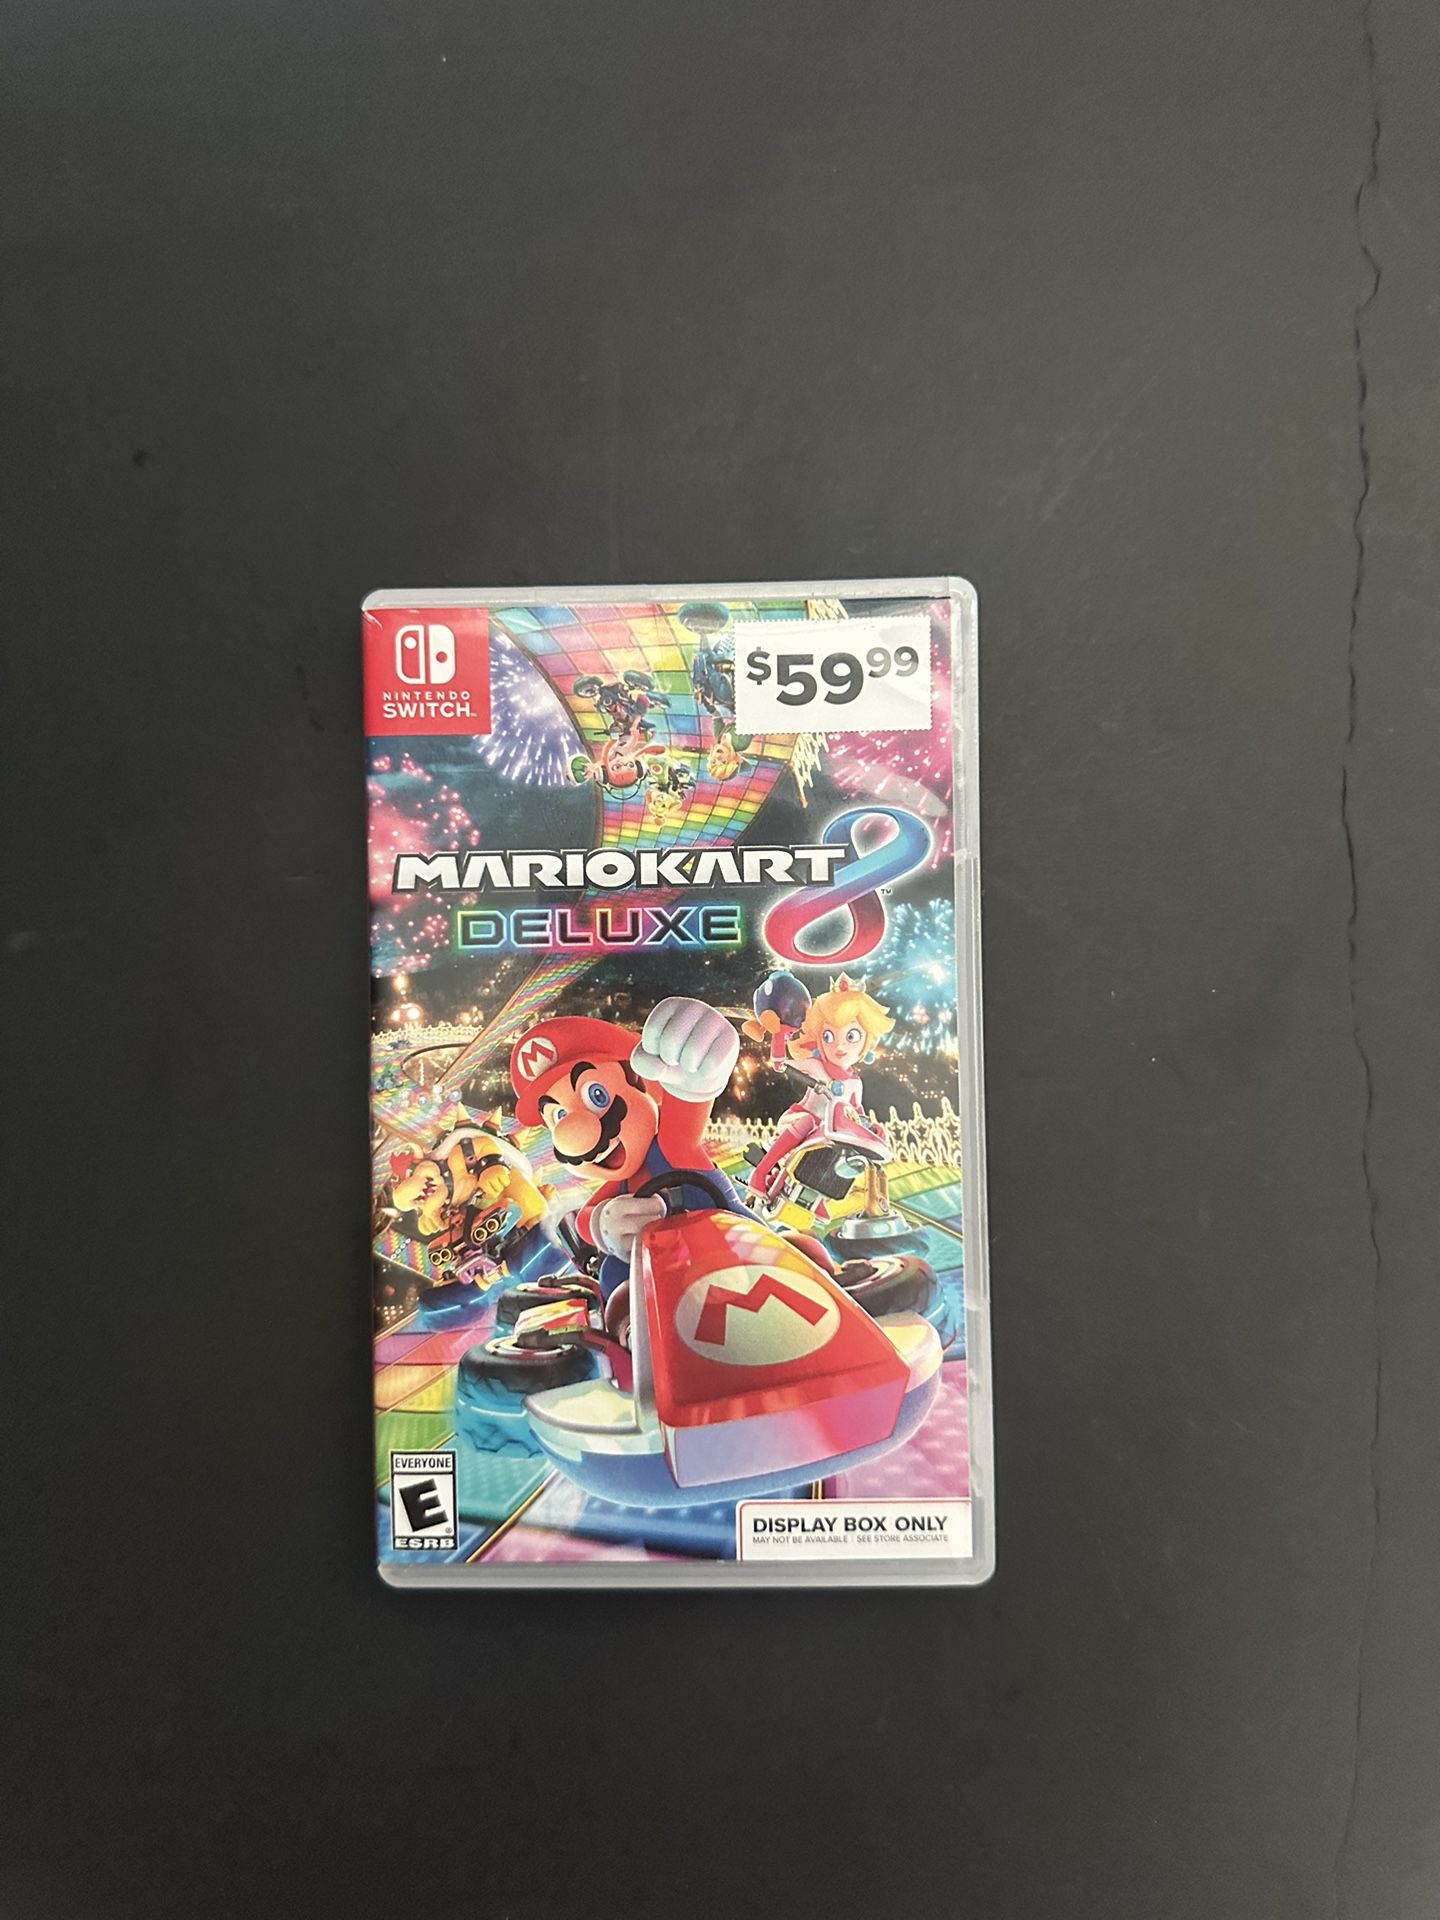 Mario Kart 8 Deluxe for Nintendo Switch